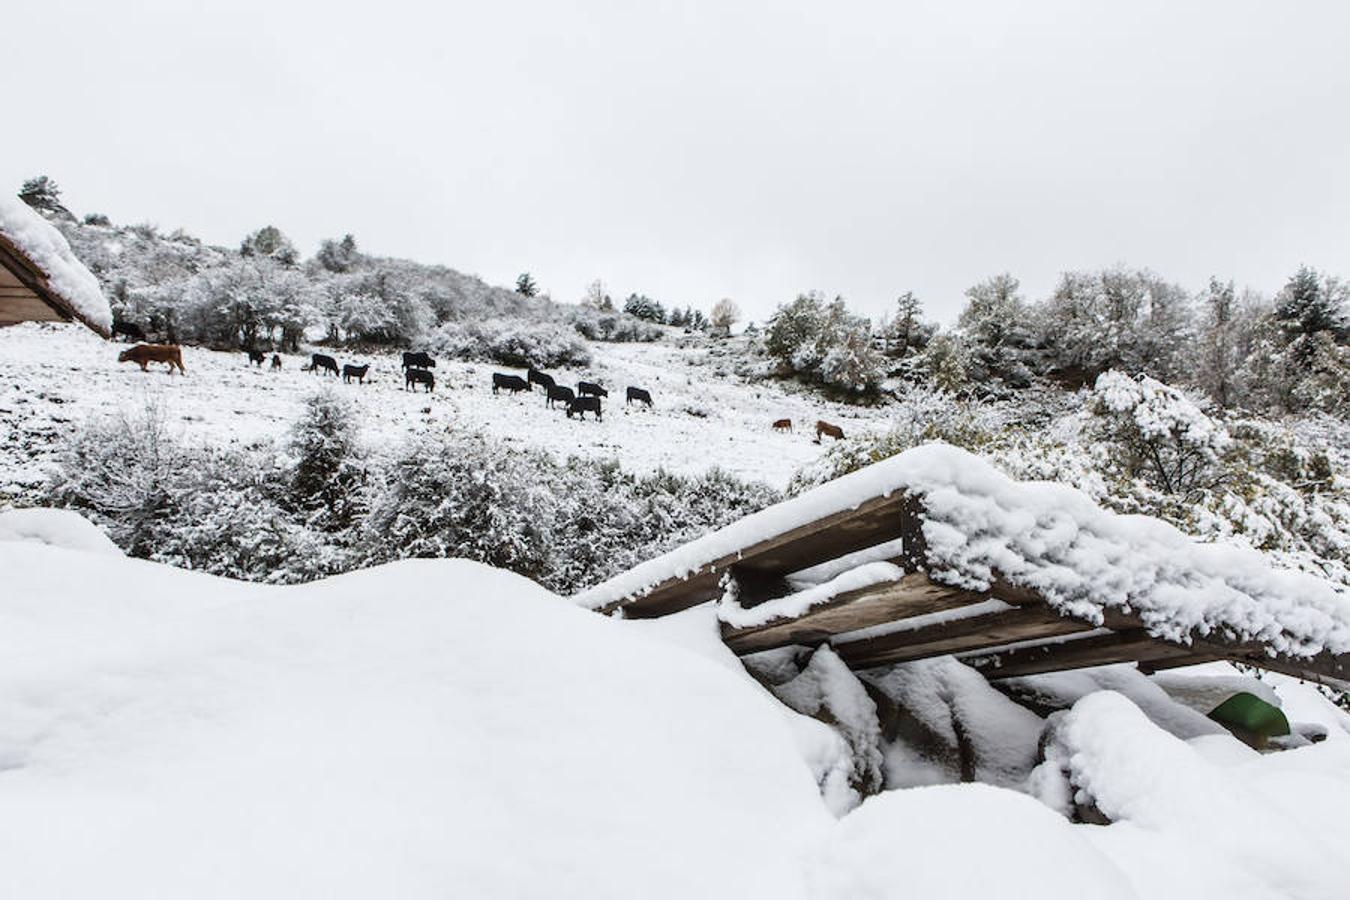 La nieve empieza a dominar el terreno y a rodear el valle riojano. La Rioja empieza a lucir un manto blanco muy esperado dada la sequía reinante en el campo. «La nieve es la sangre de la tierra», dicen los veteranos que viven en las zonas rurales de montaña